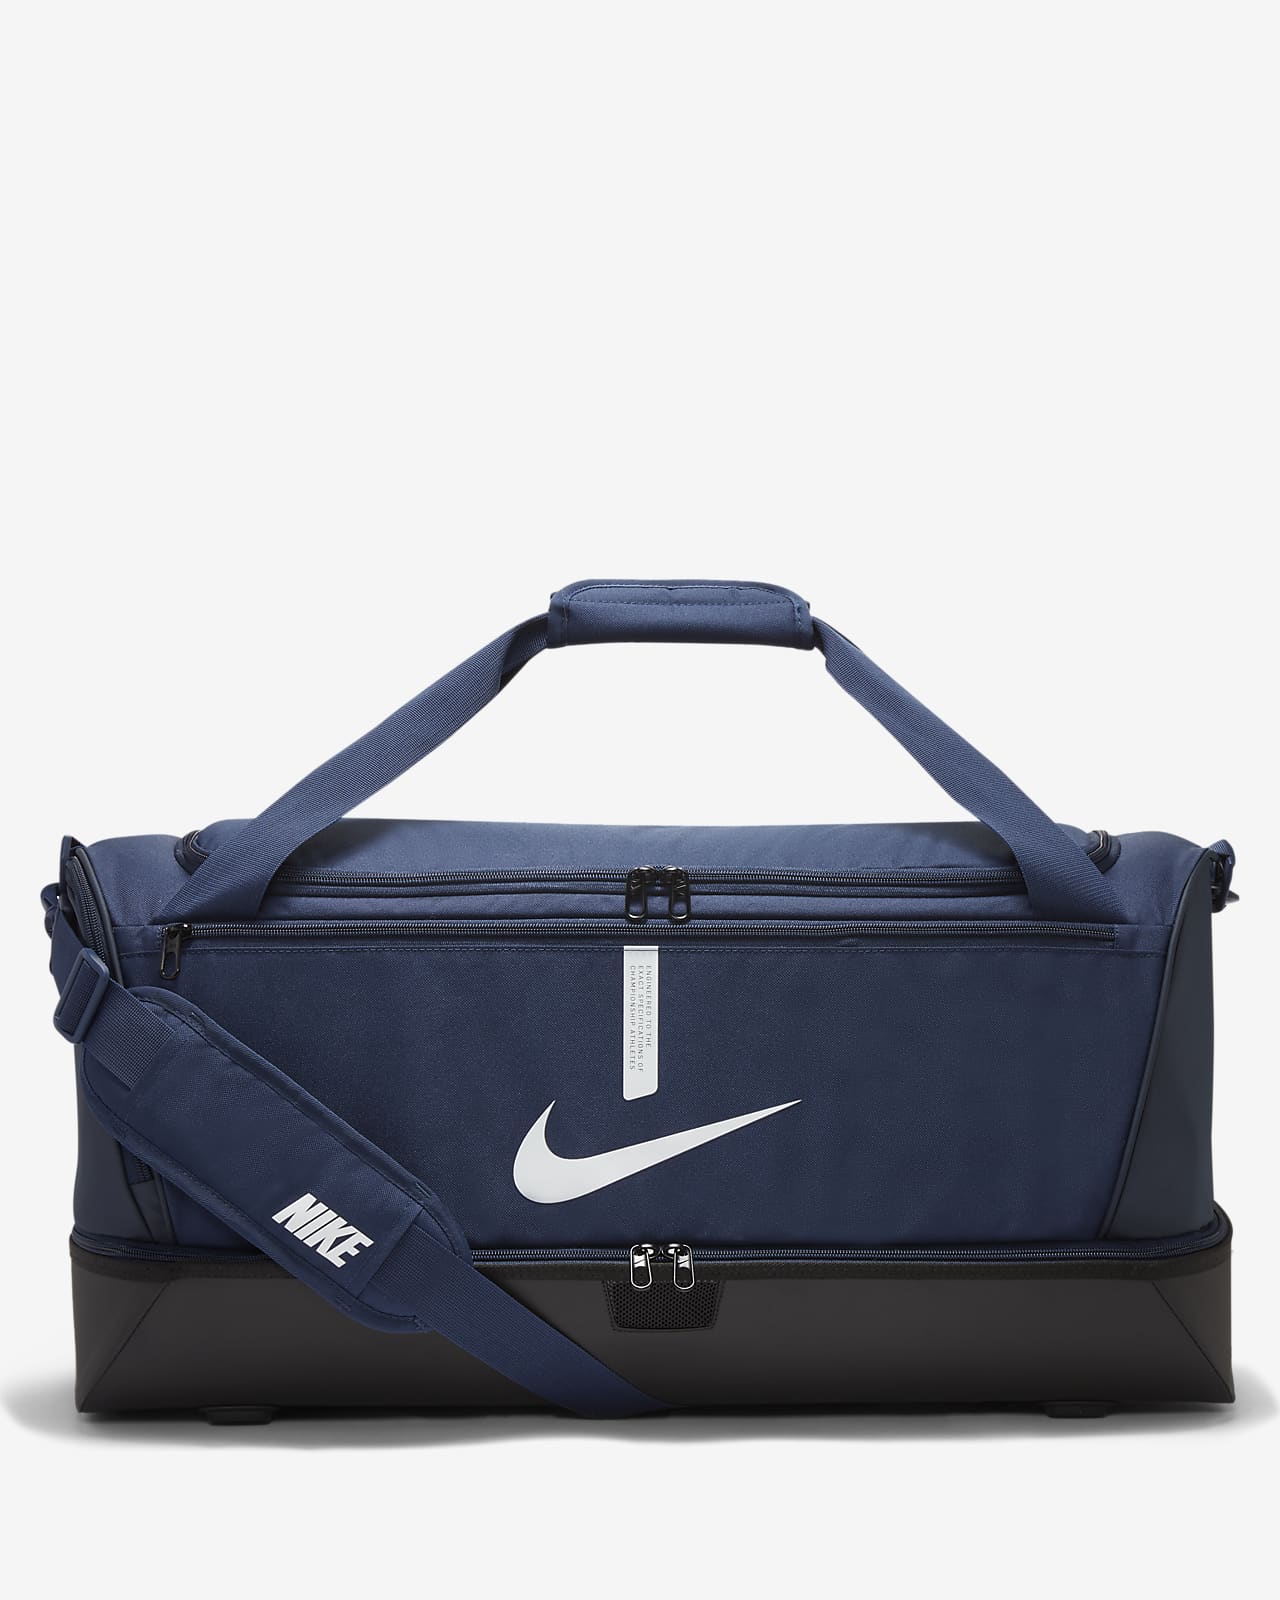 Τσάντα γυμναστηρίου για ποδόσφαιρο με σκληρή βάση Nike Academy Team (μέγεθος Large, 59L)